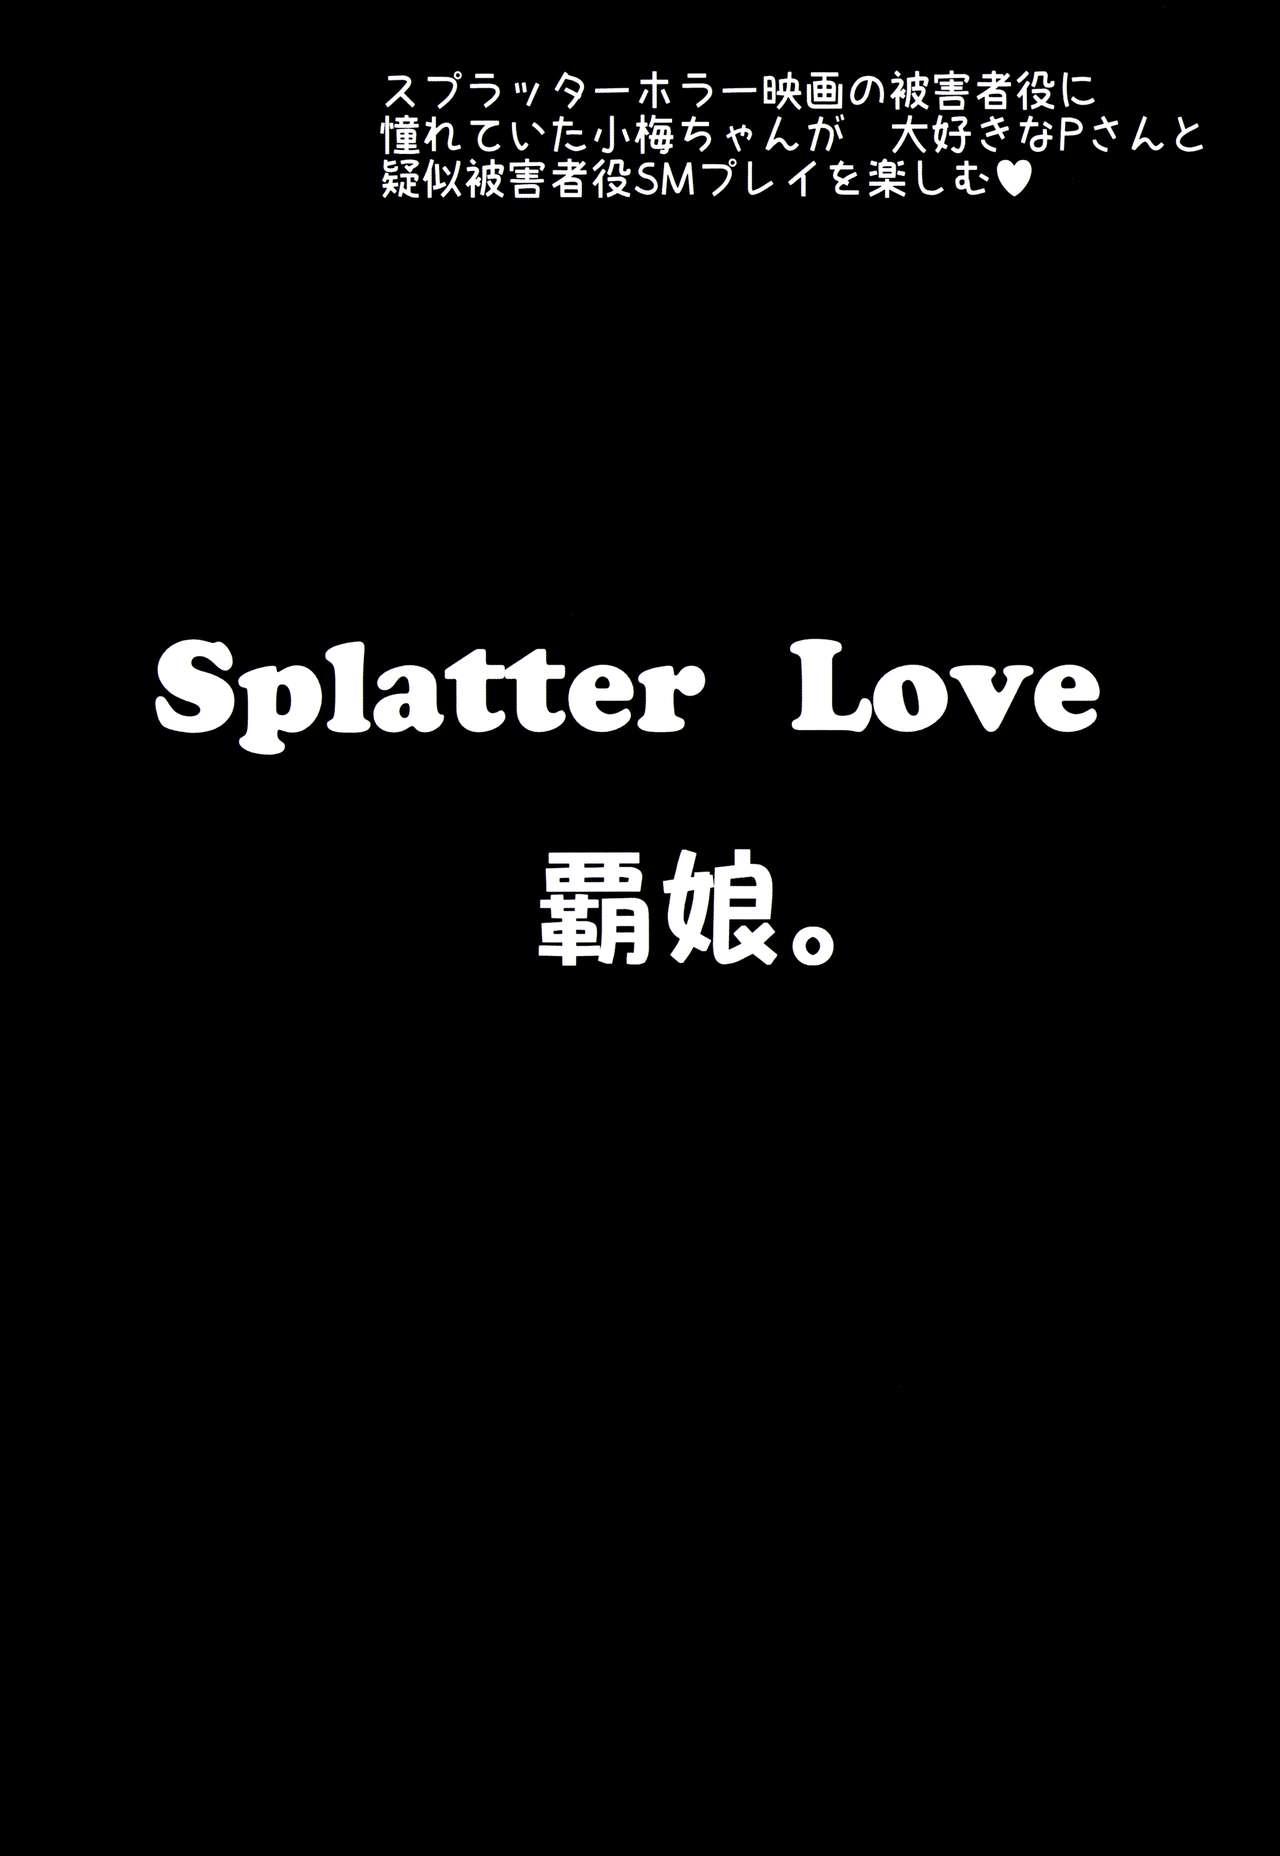 Splatter Love 33